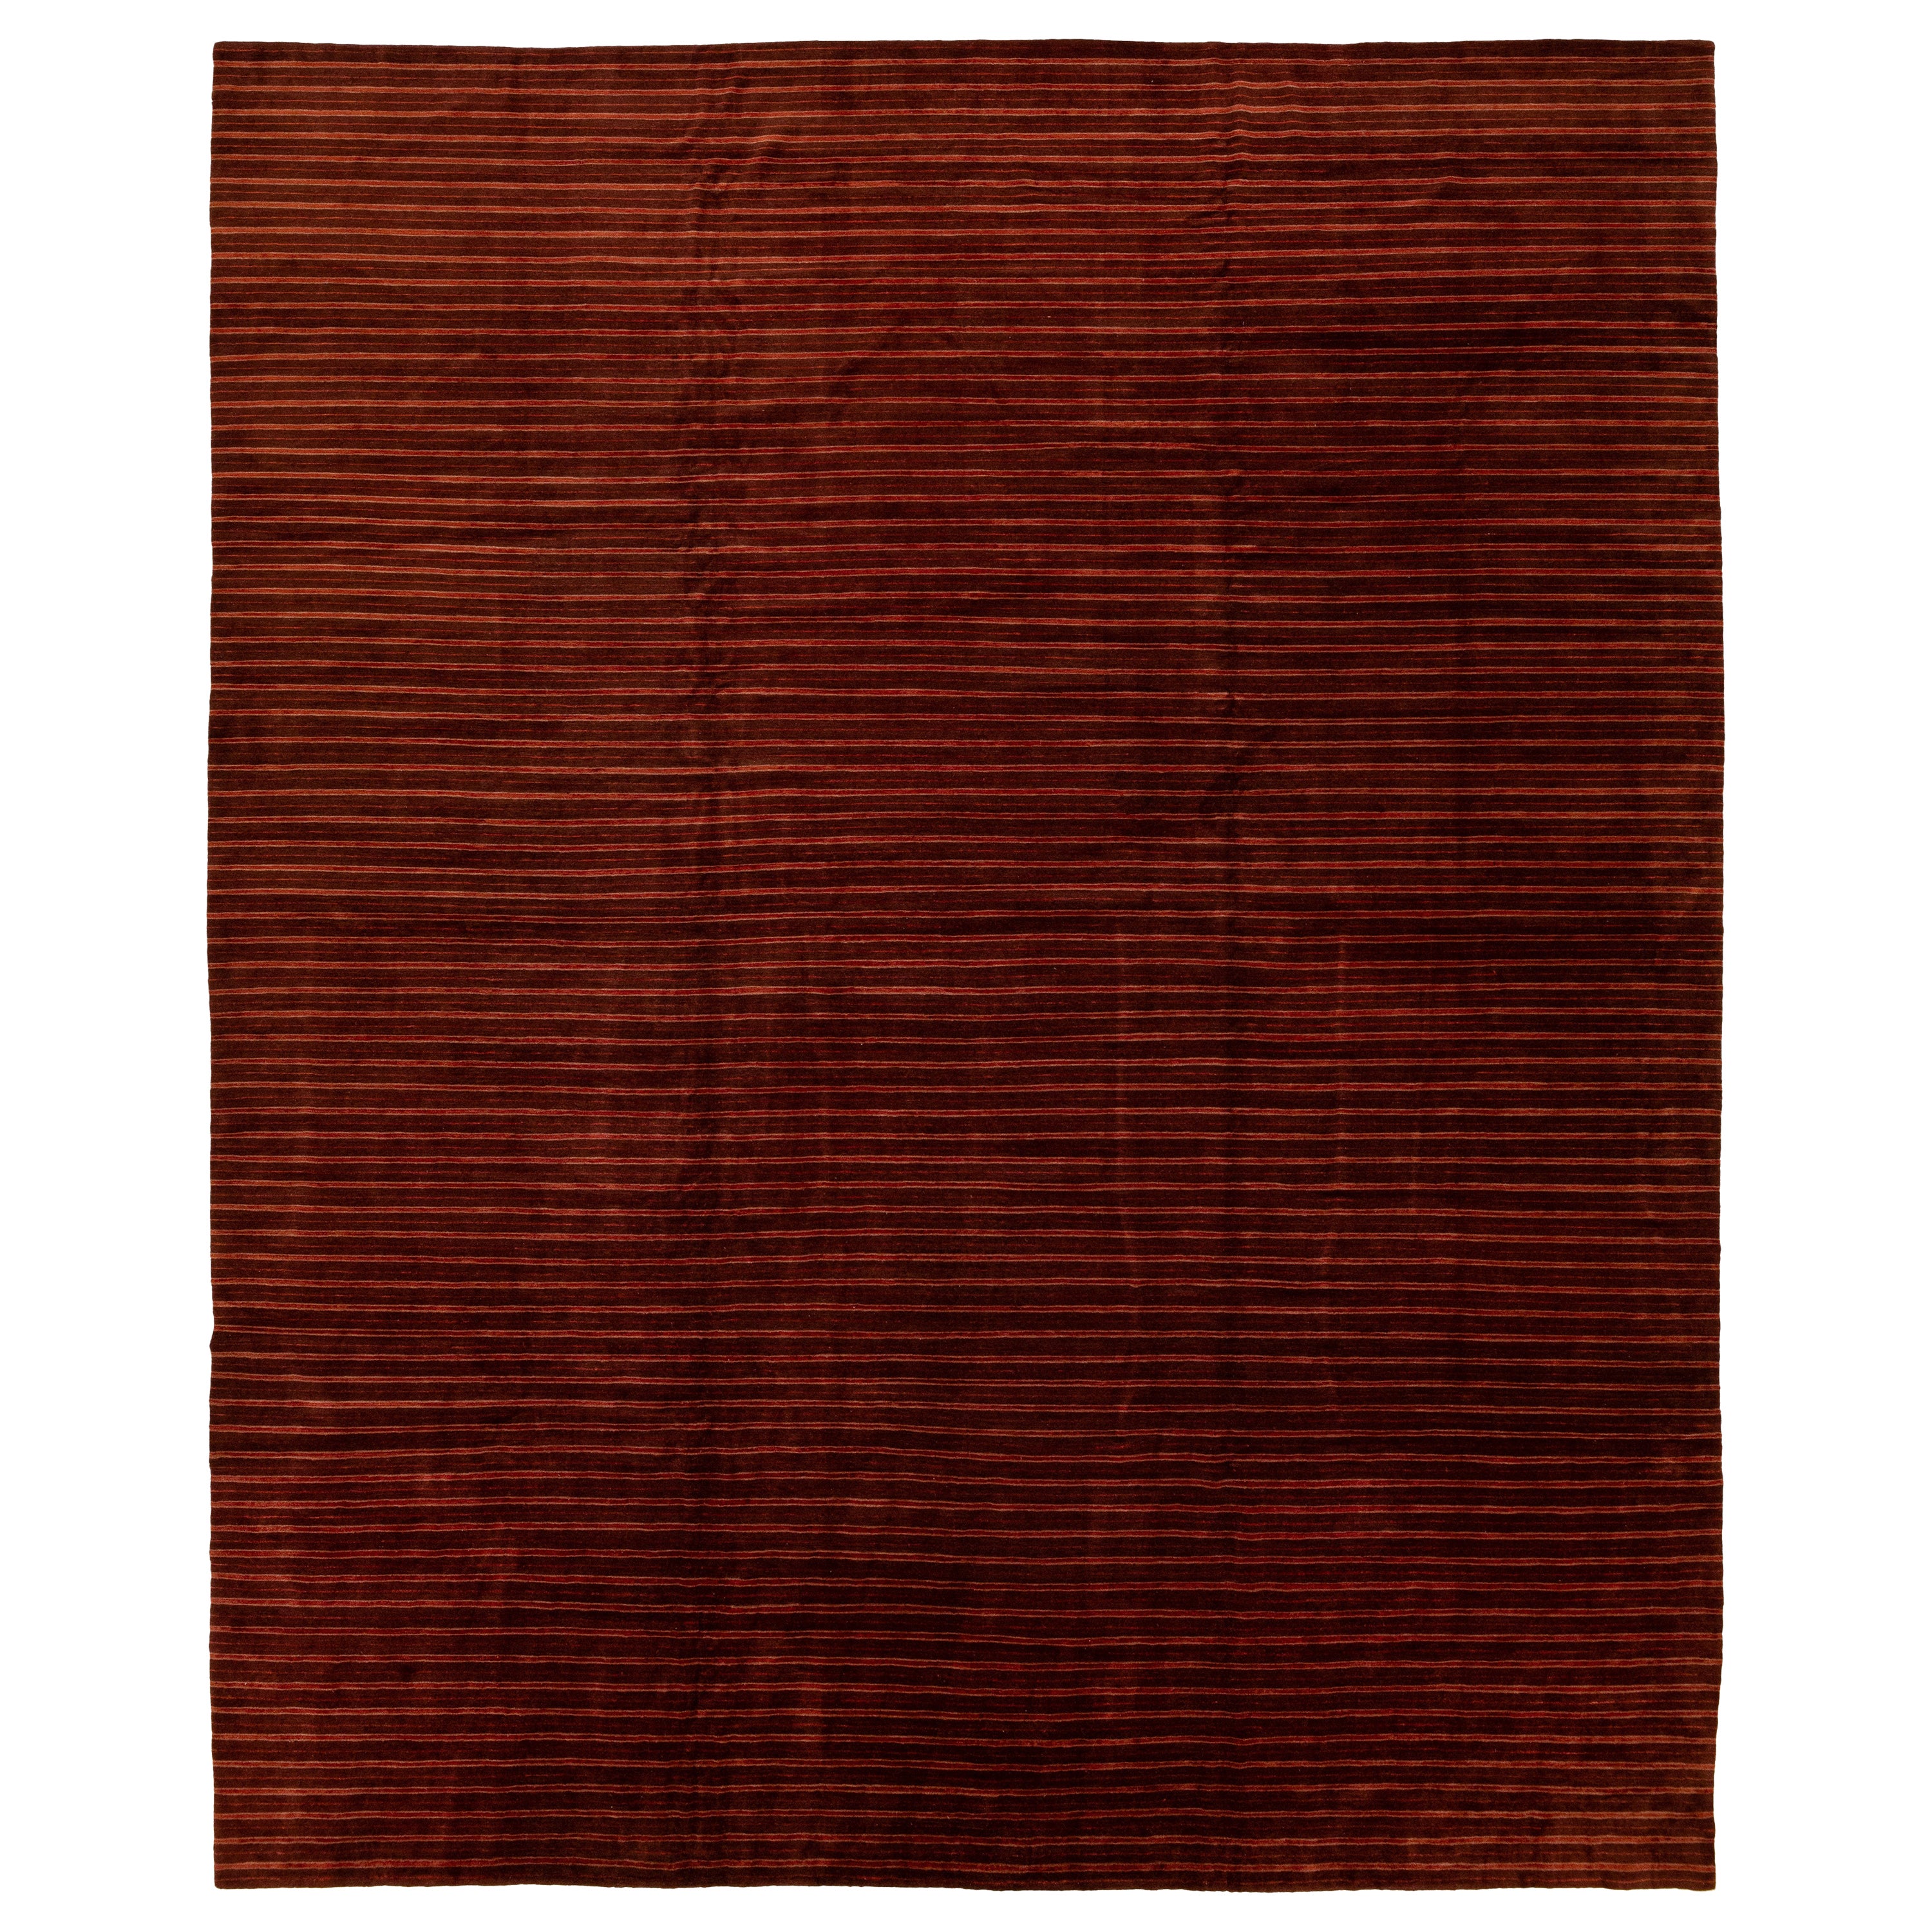 Moderner burgunderroter tibetischer Teppich aus Wolle und Seide mit gestärktem Muster